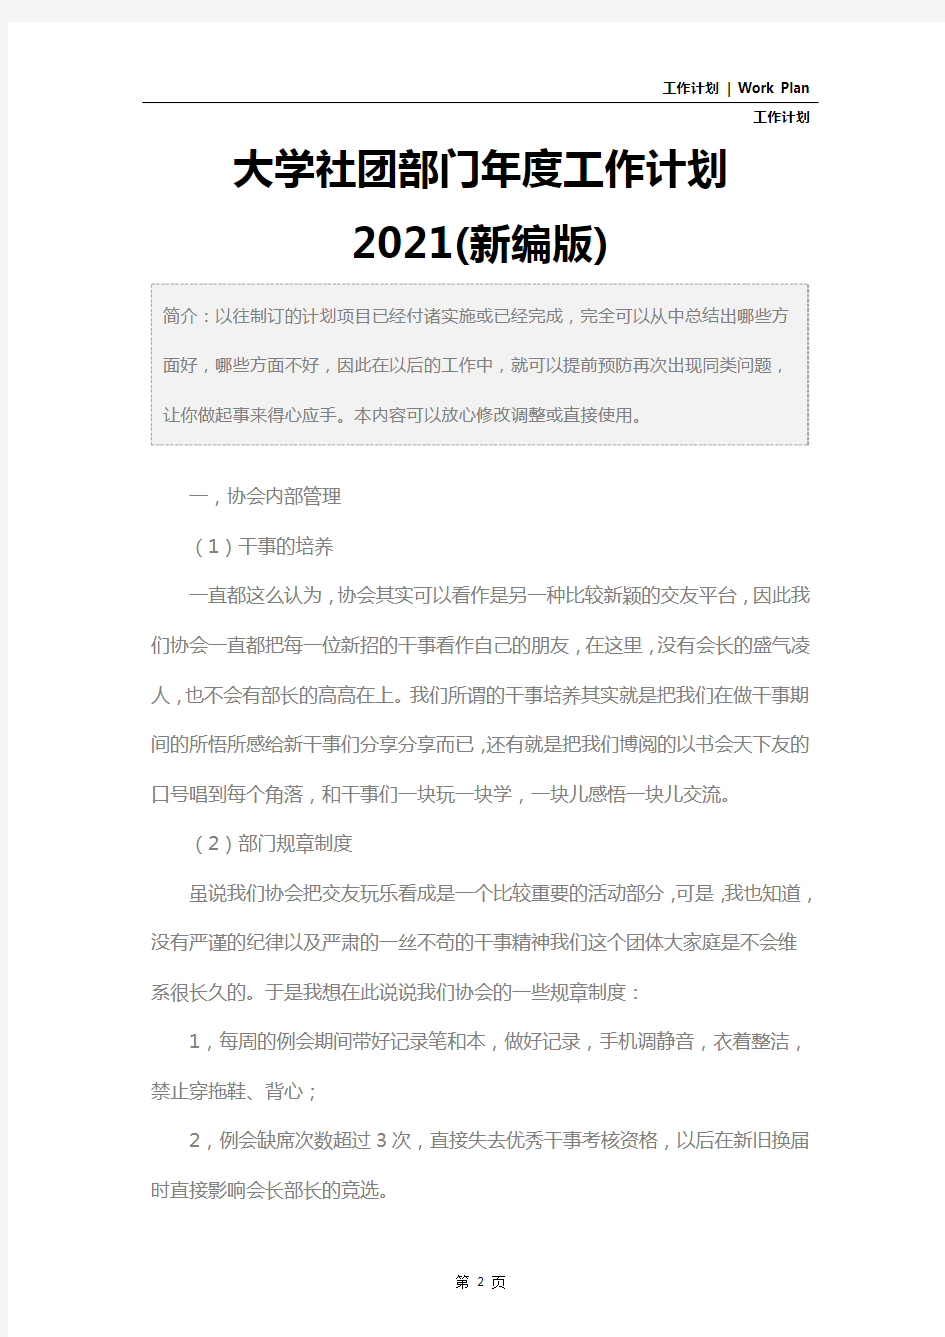 大学社团部门年度工作计划2021(新编版)